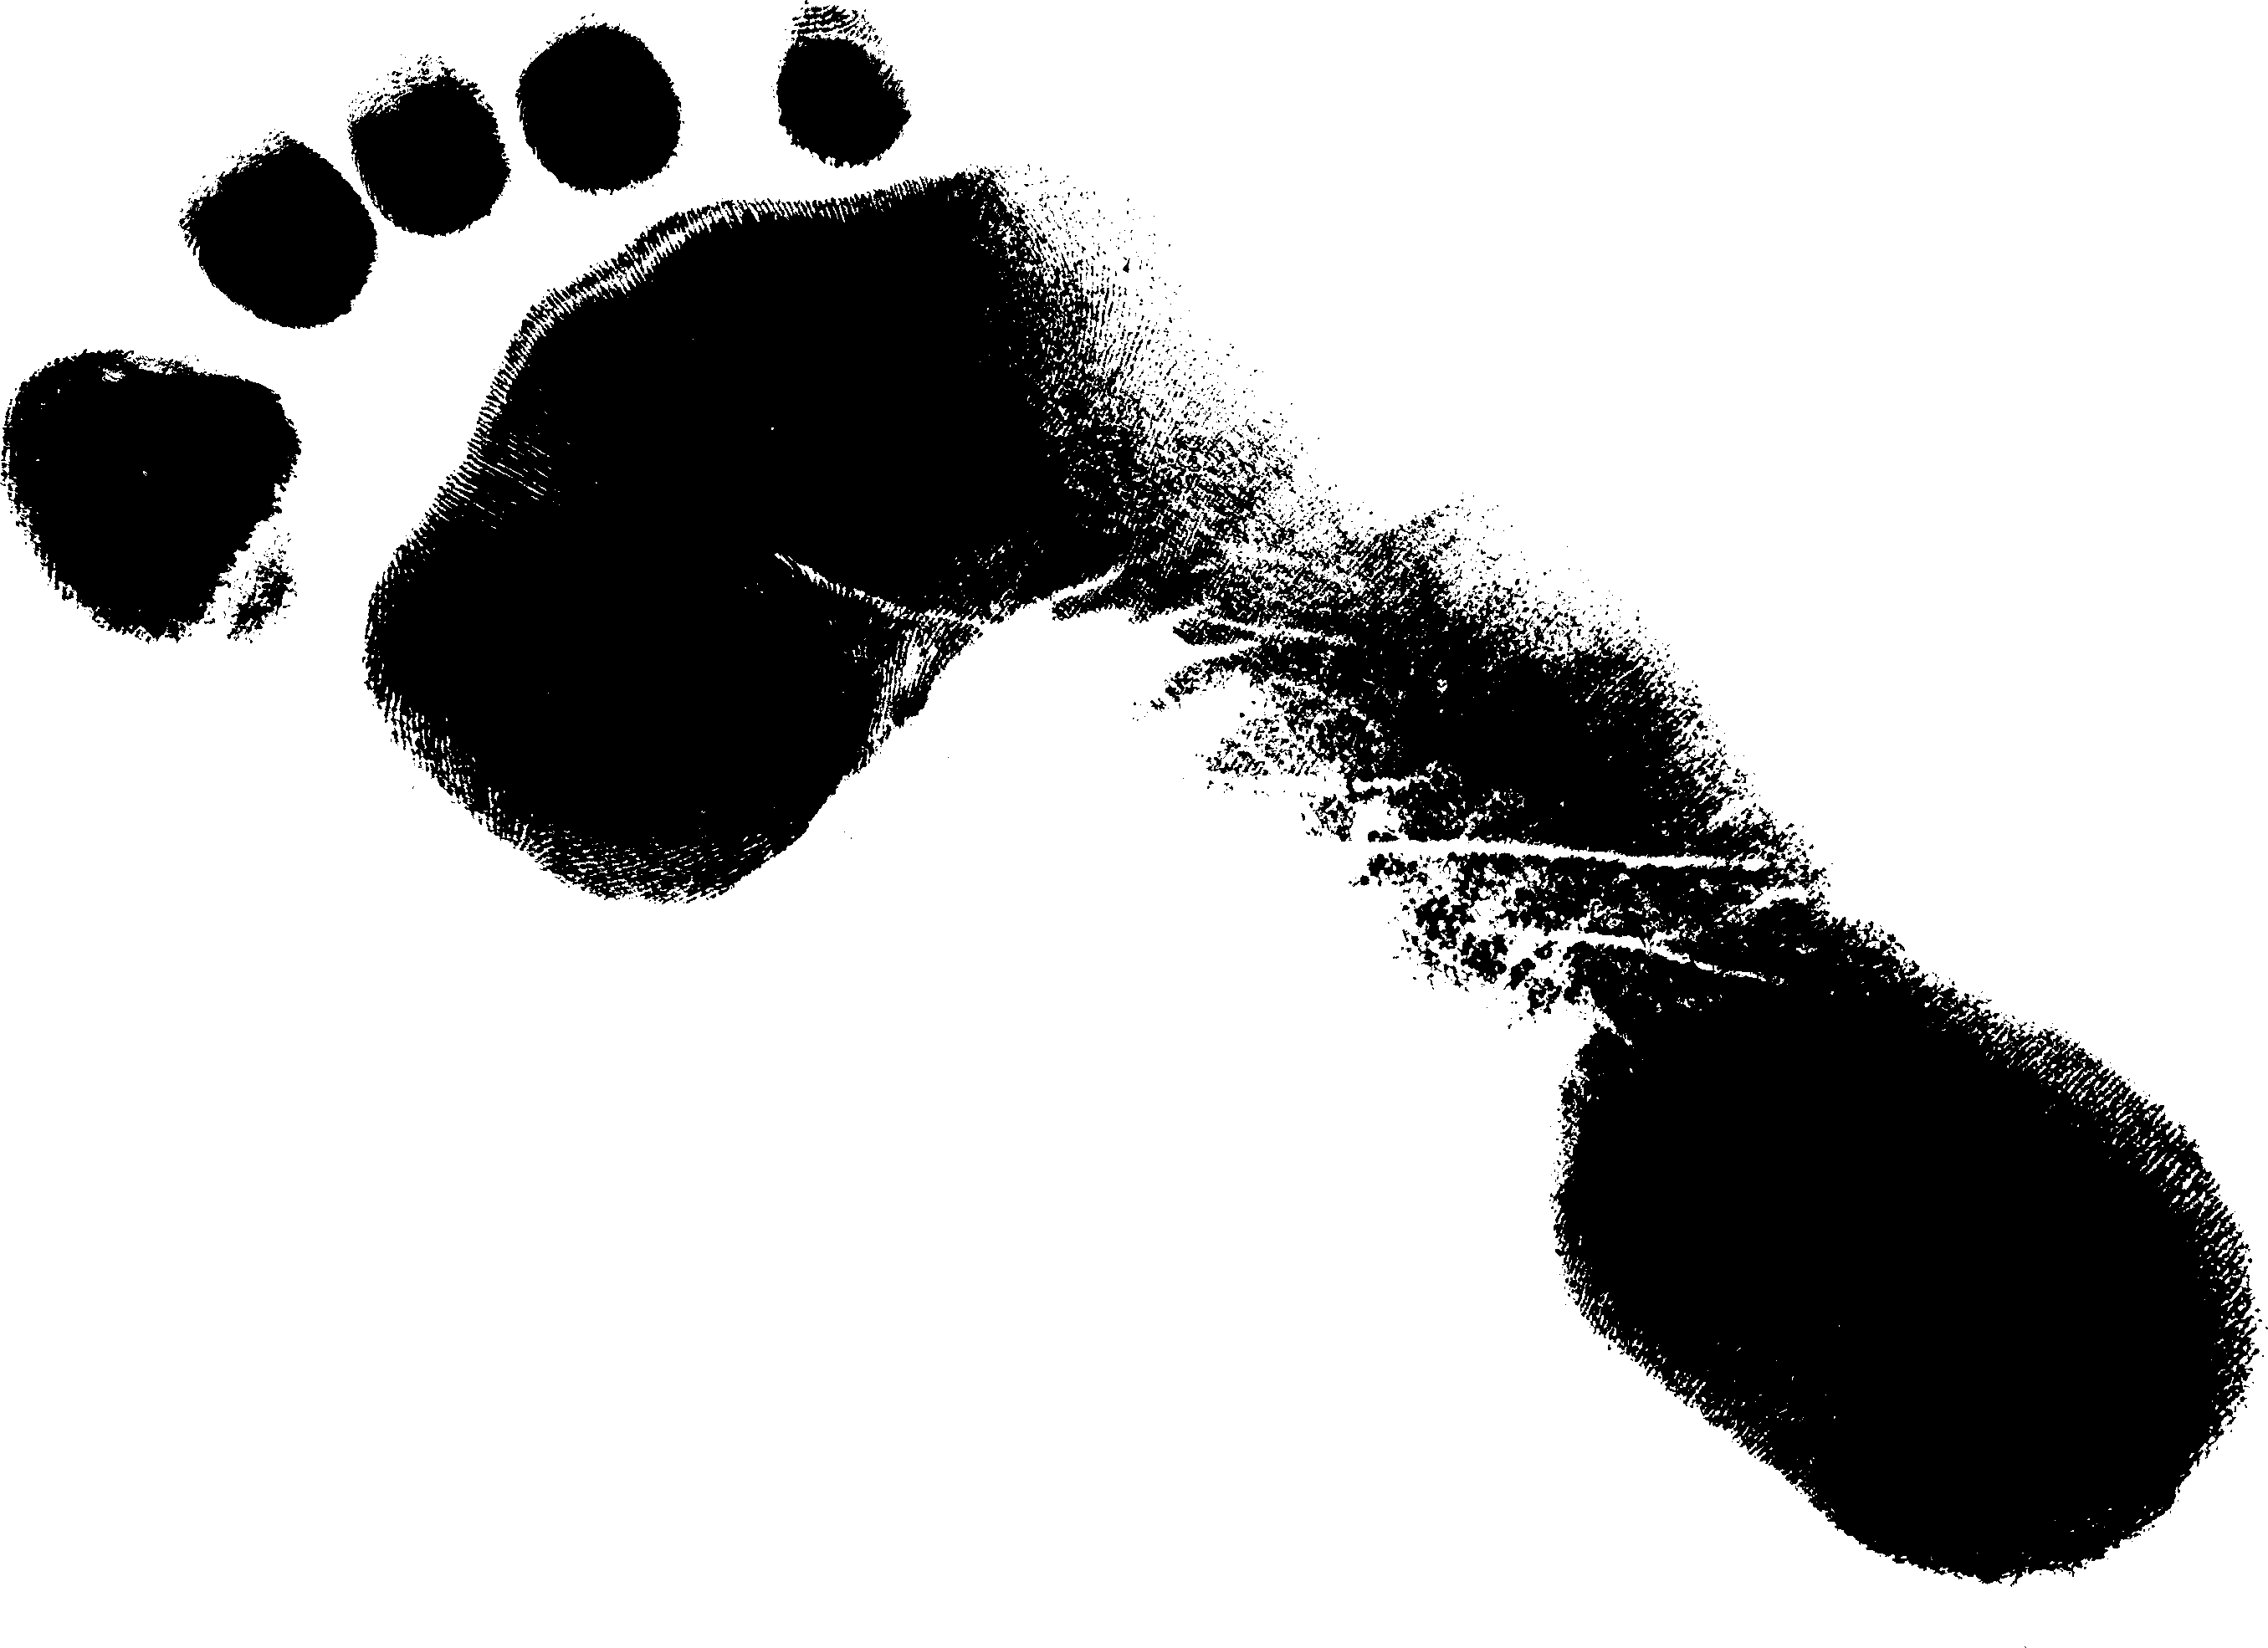 Impronta dellimmagine Trasparente della siluetta